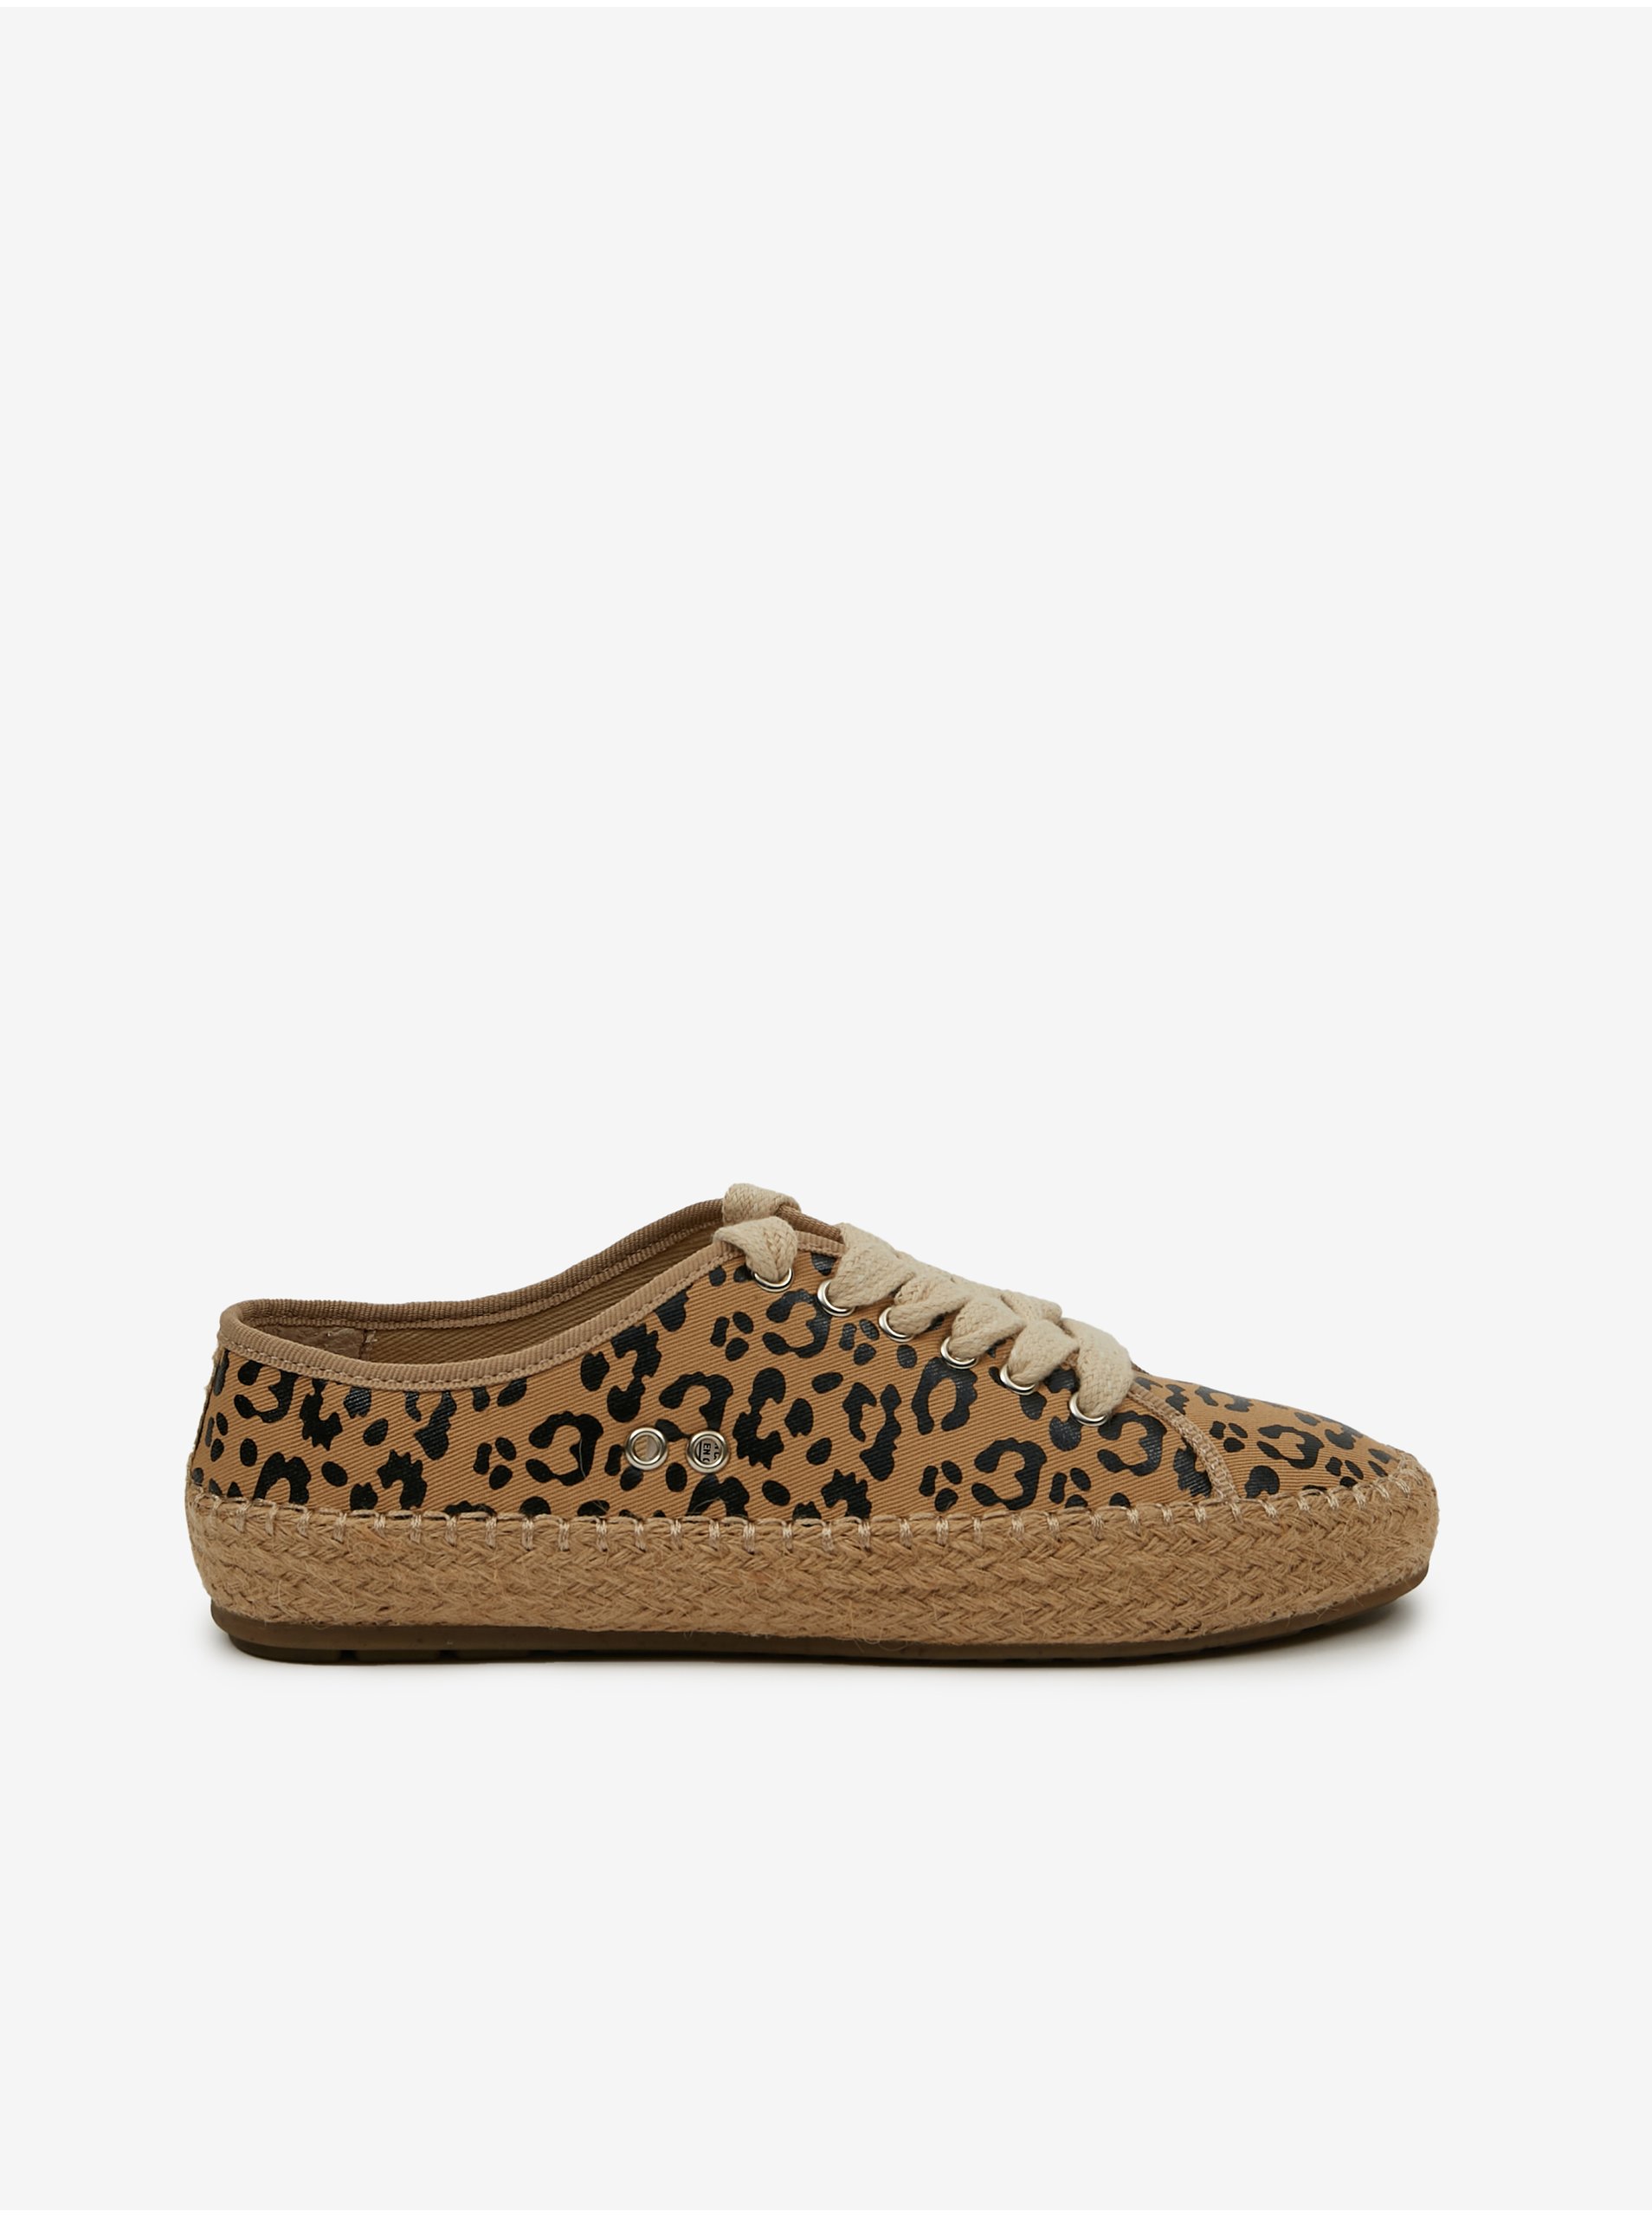 E-shop Béžové dámske vzorované tenisky Emu Australia Cuban Sand Leopard